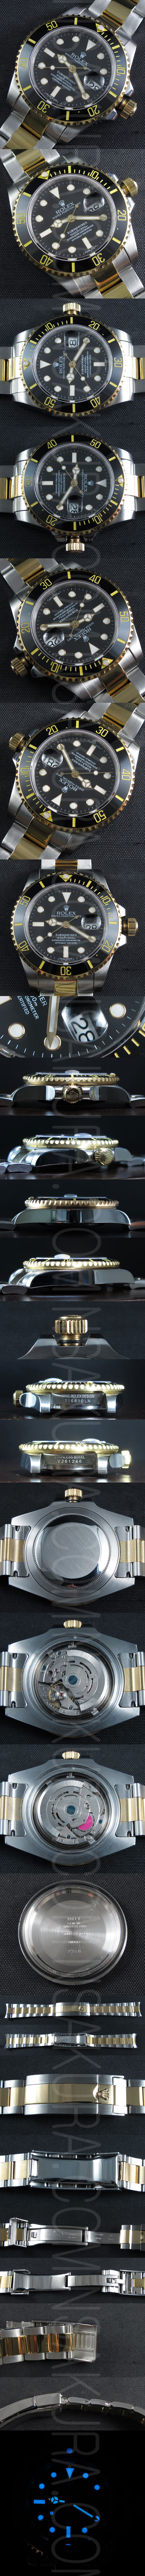 レプリカ時計ロレックス サブマリーナ Asian 21600振動 - ウインドウを閉じる